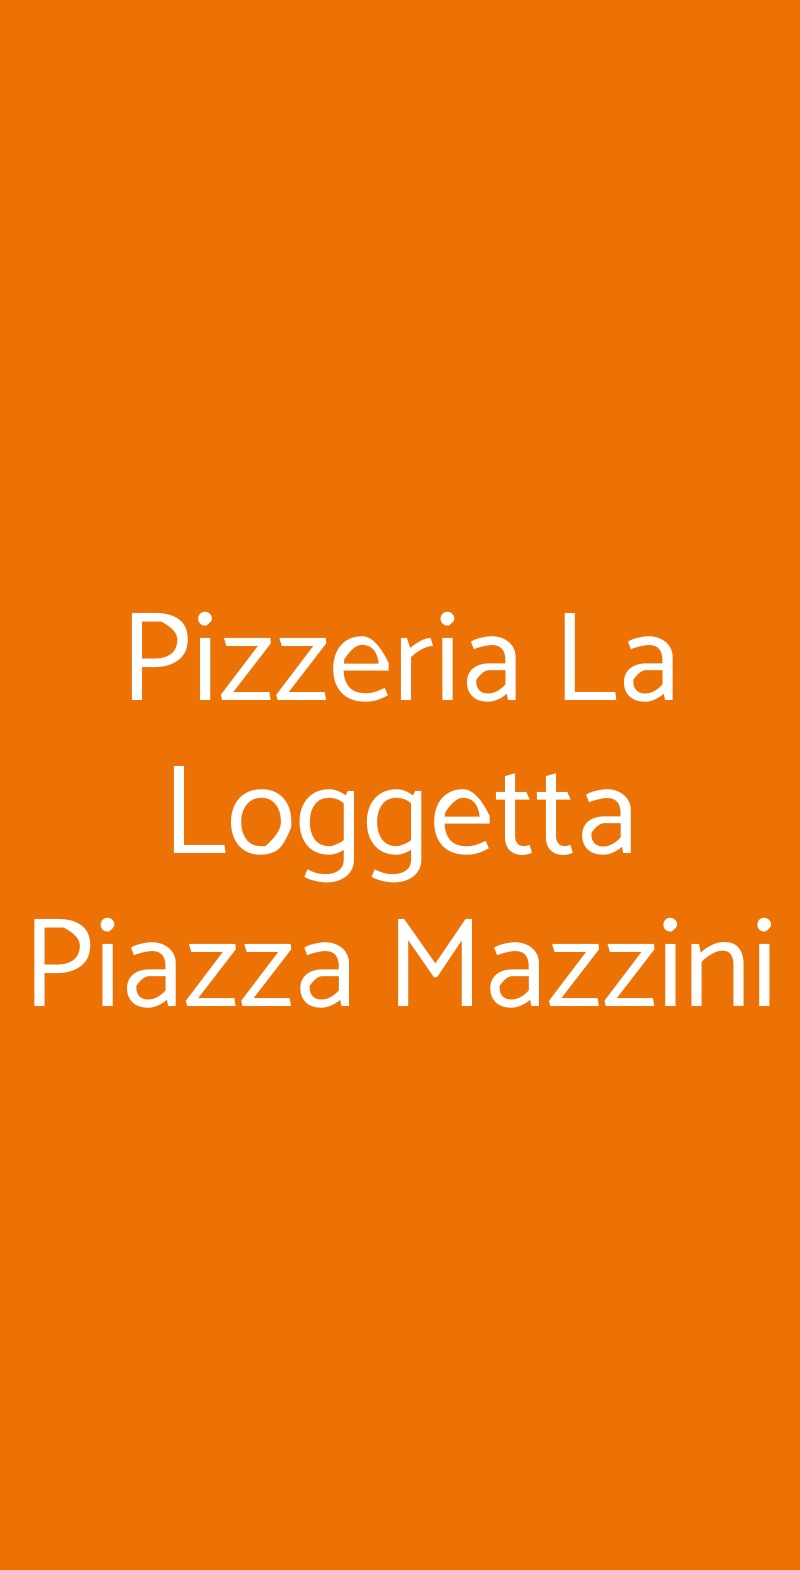 Pizzeria La Loggetta Piazza Mazzini Santa Maria Capua Vetere menù 1 pagina